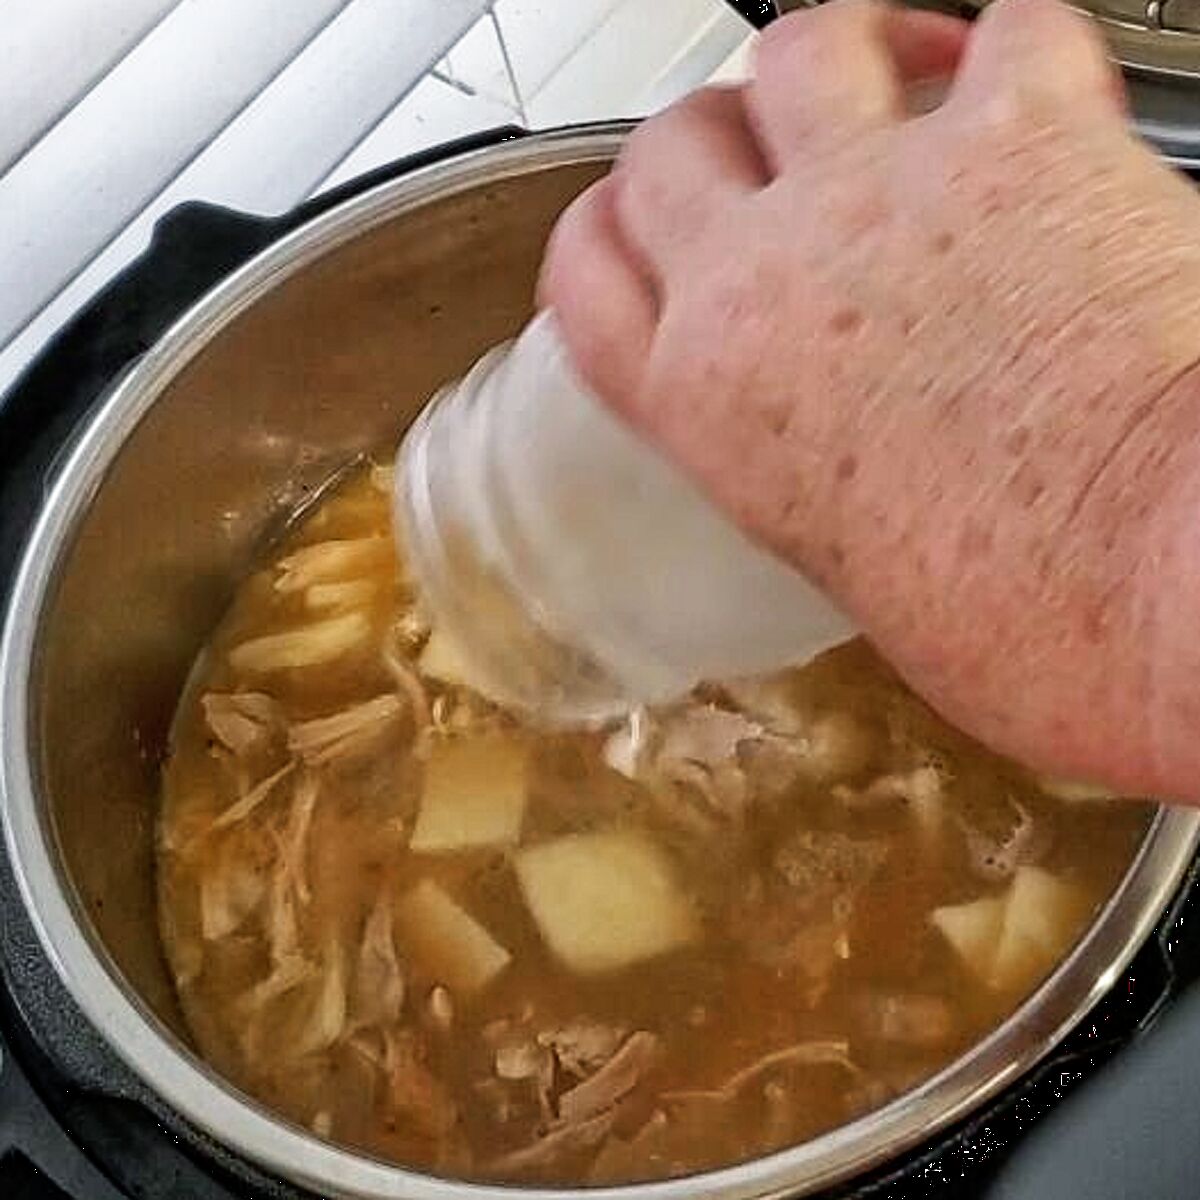 adding cornstarch slurry to chicken and dumplings to thicken.